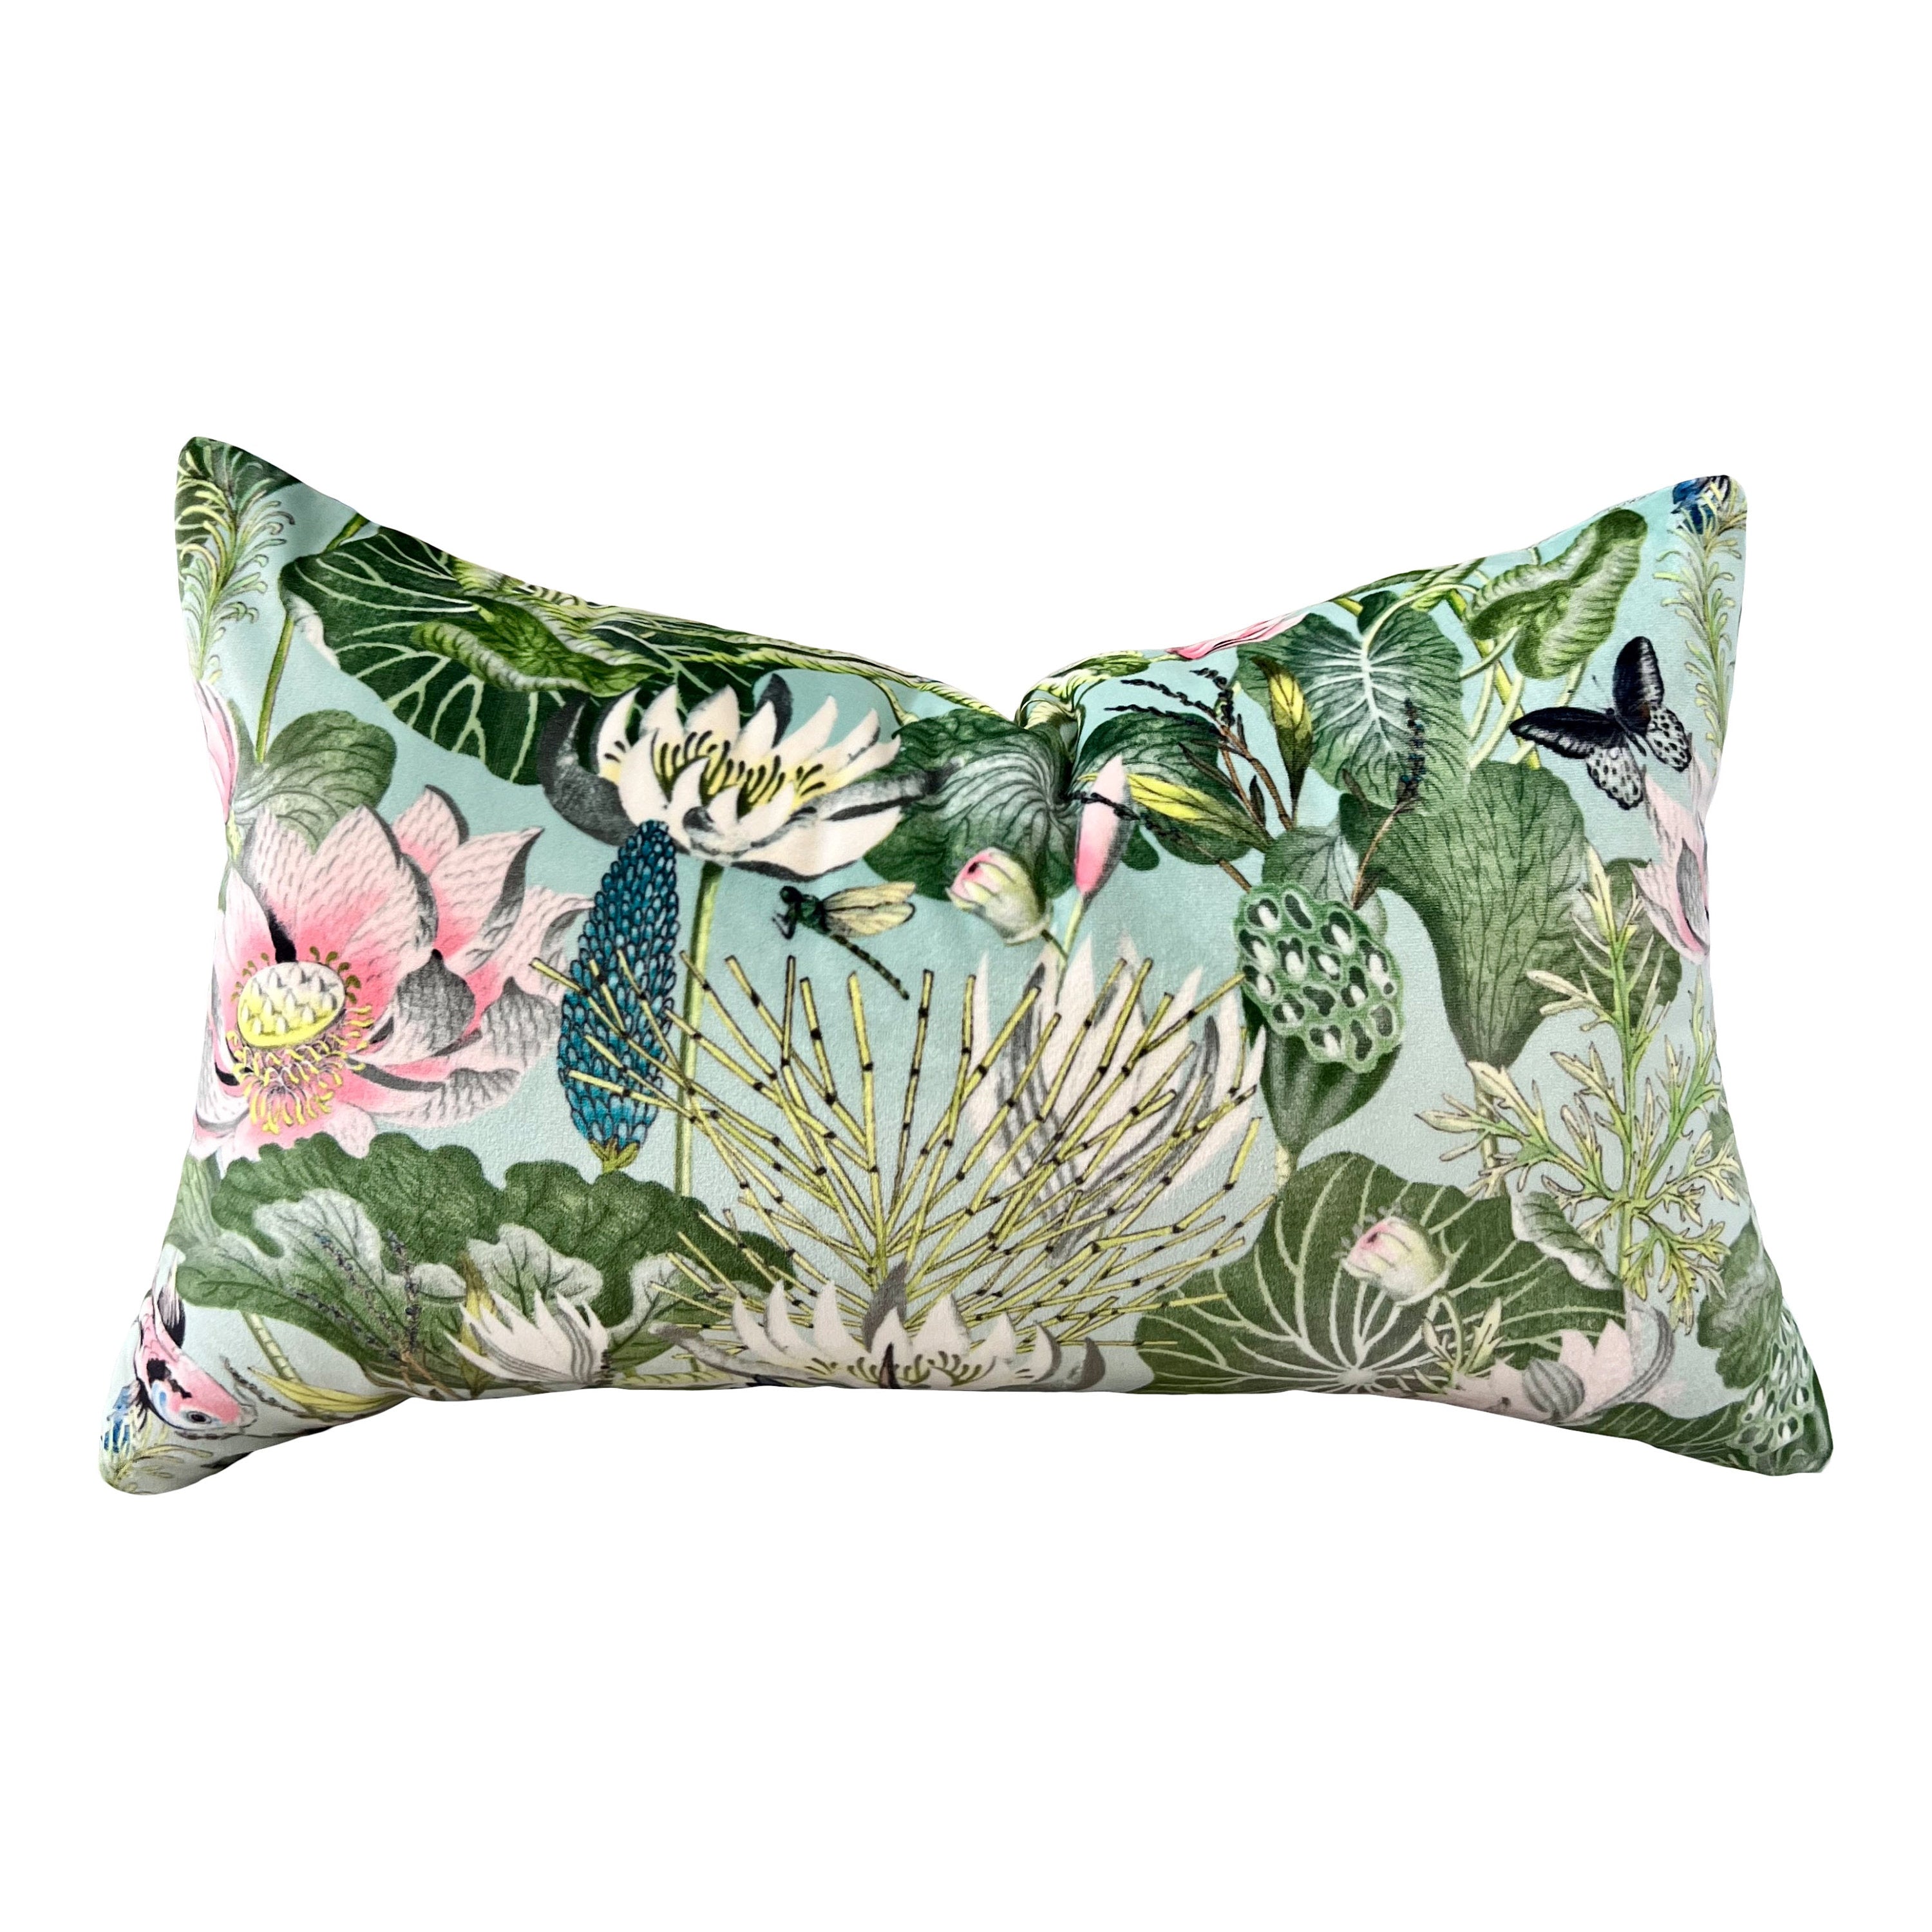 Waterlily Designer Velvet Pillow in Aqua.  Velvet Pillows, Designer Exotic Bird Pillows, High End Pillow Covers, Luxury Botanical Pillow